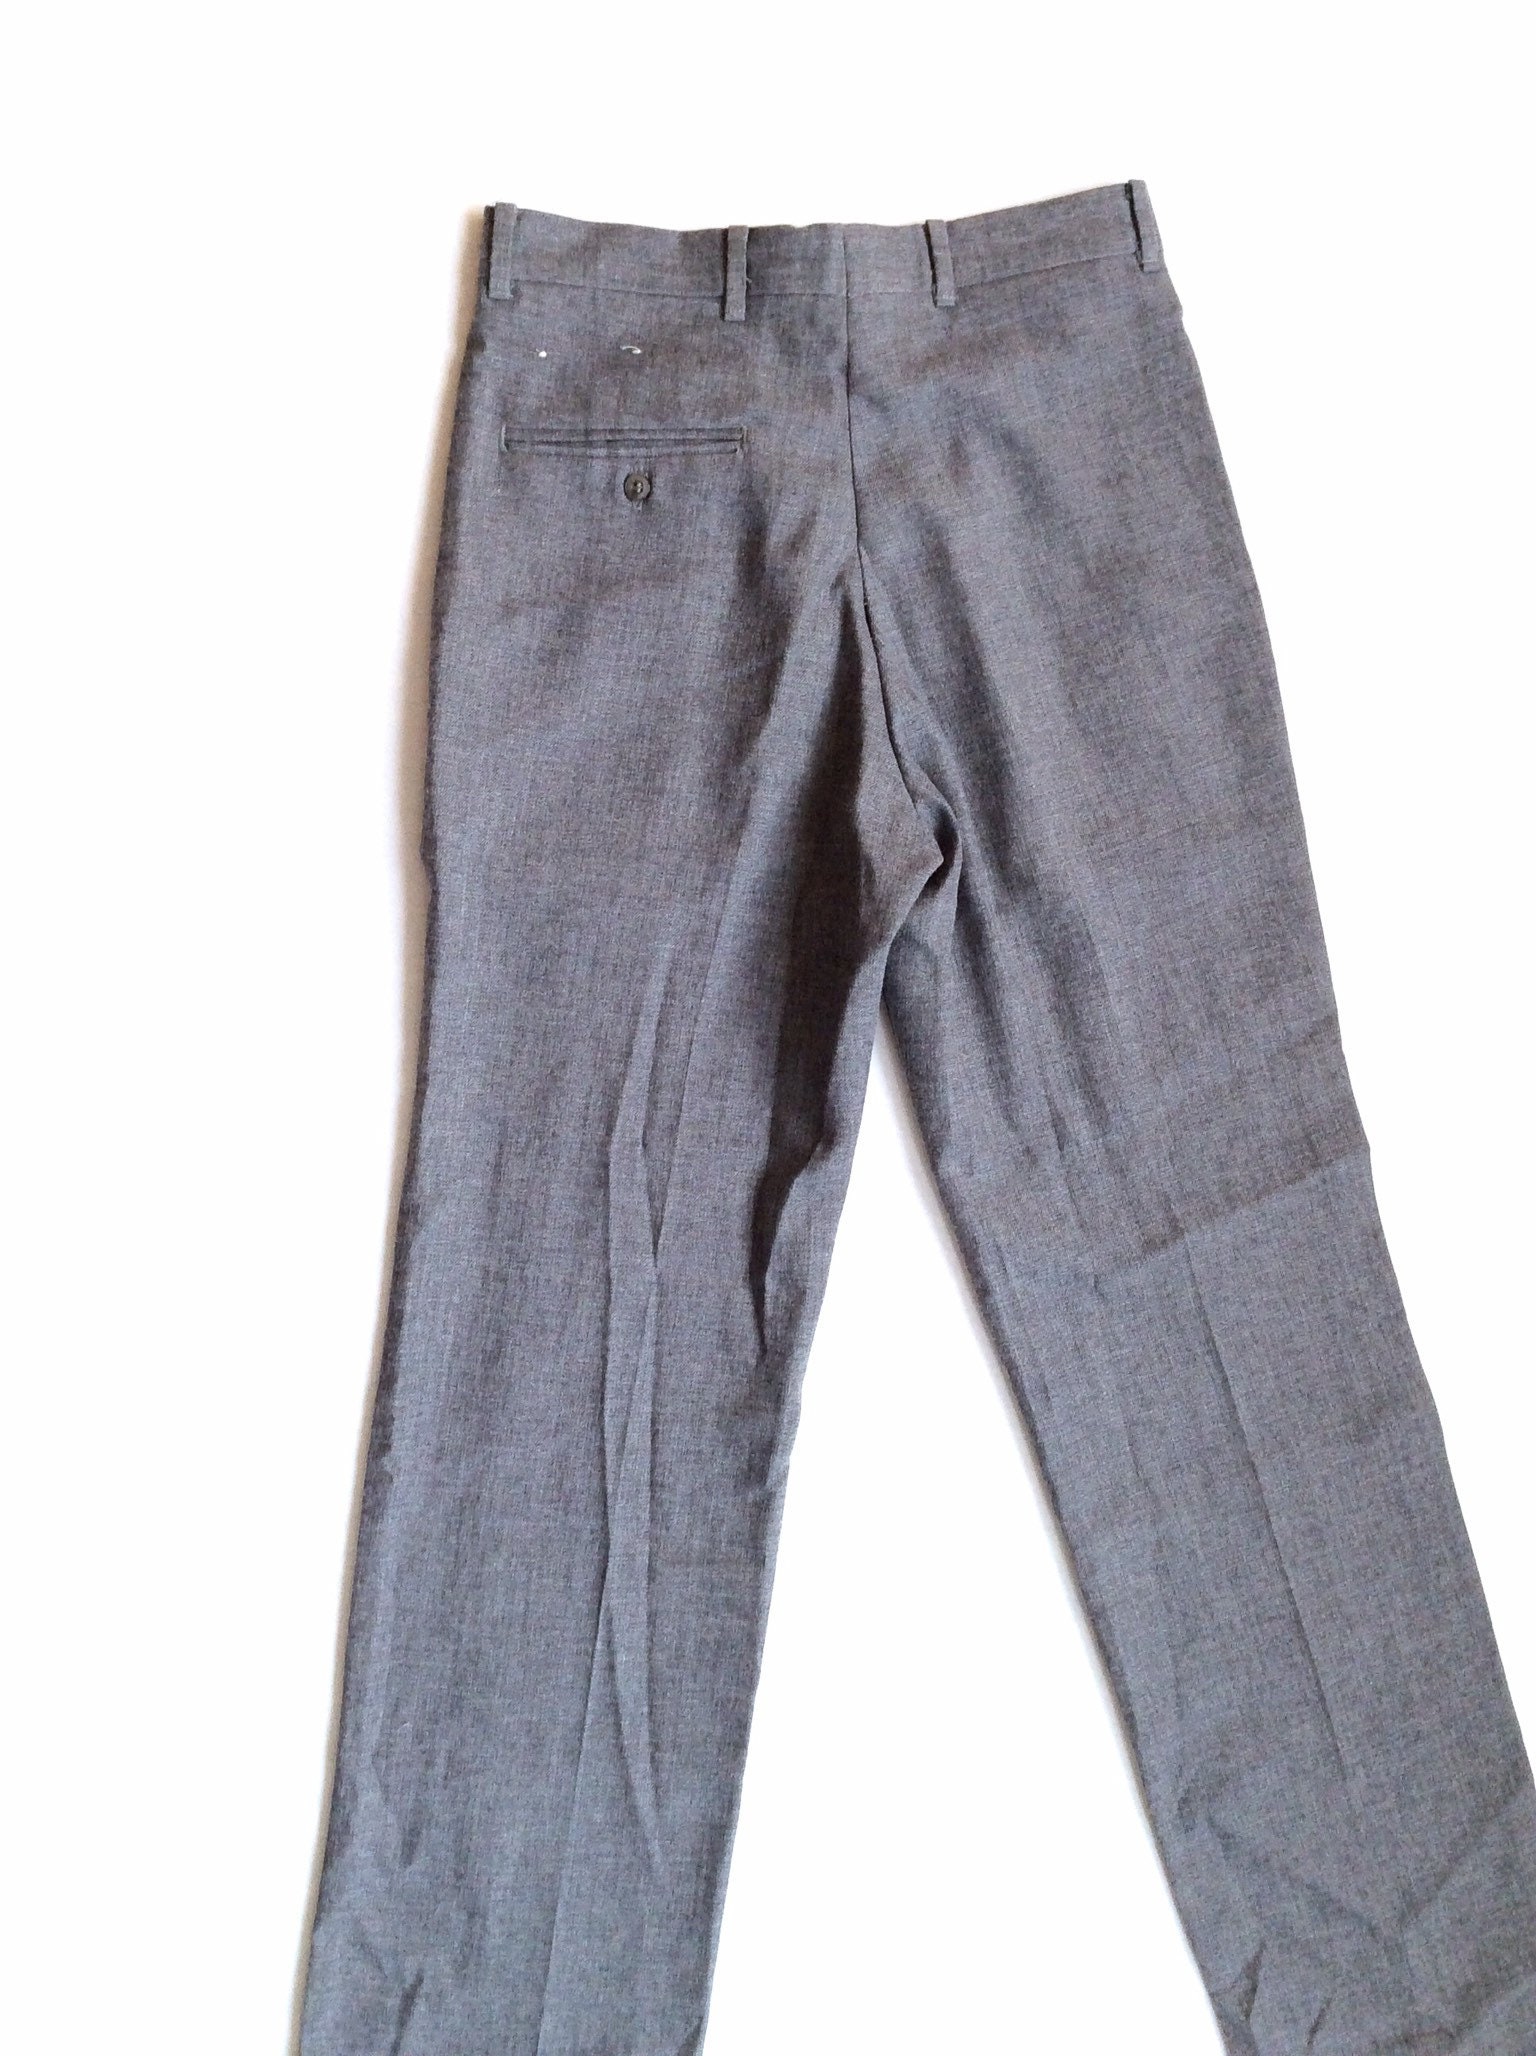 Christian Dior Jeune Homme Boys Pants. Grey Wool Blend Boys - Etsy